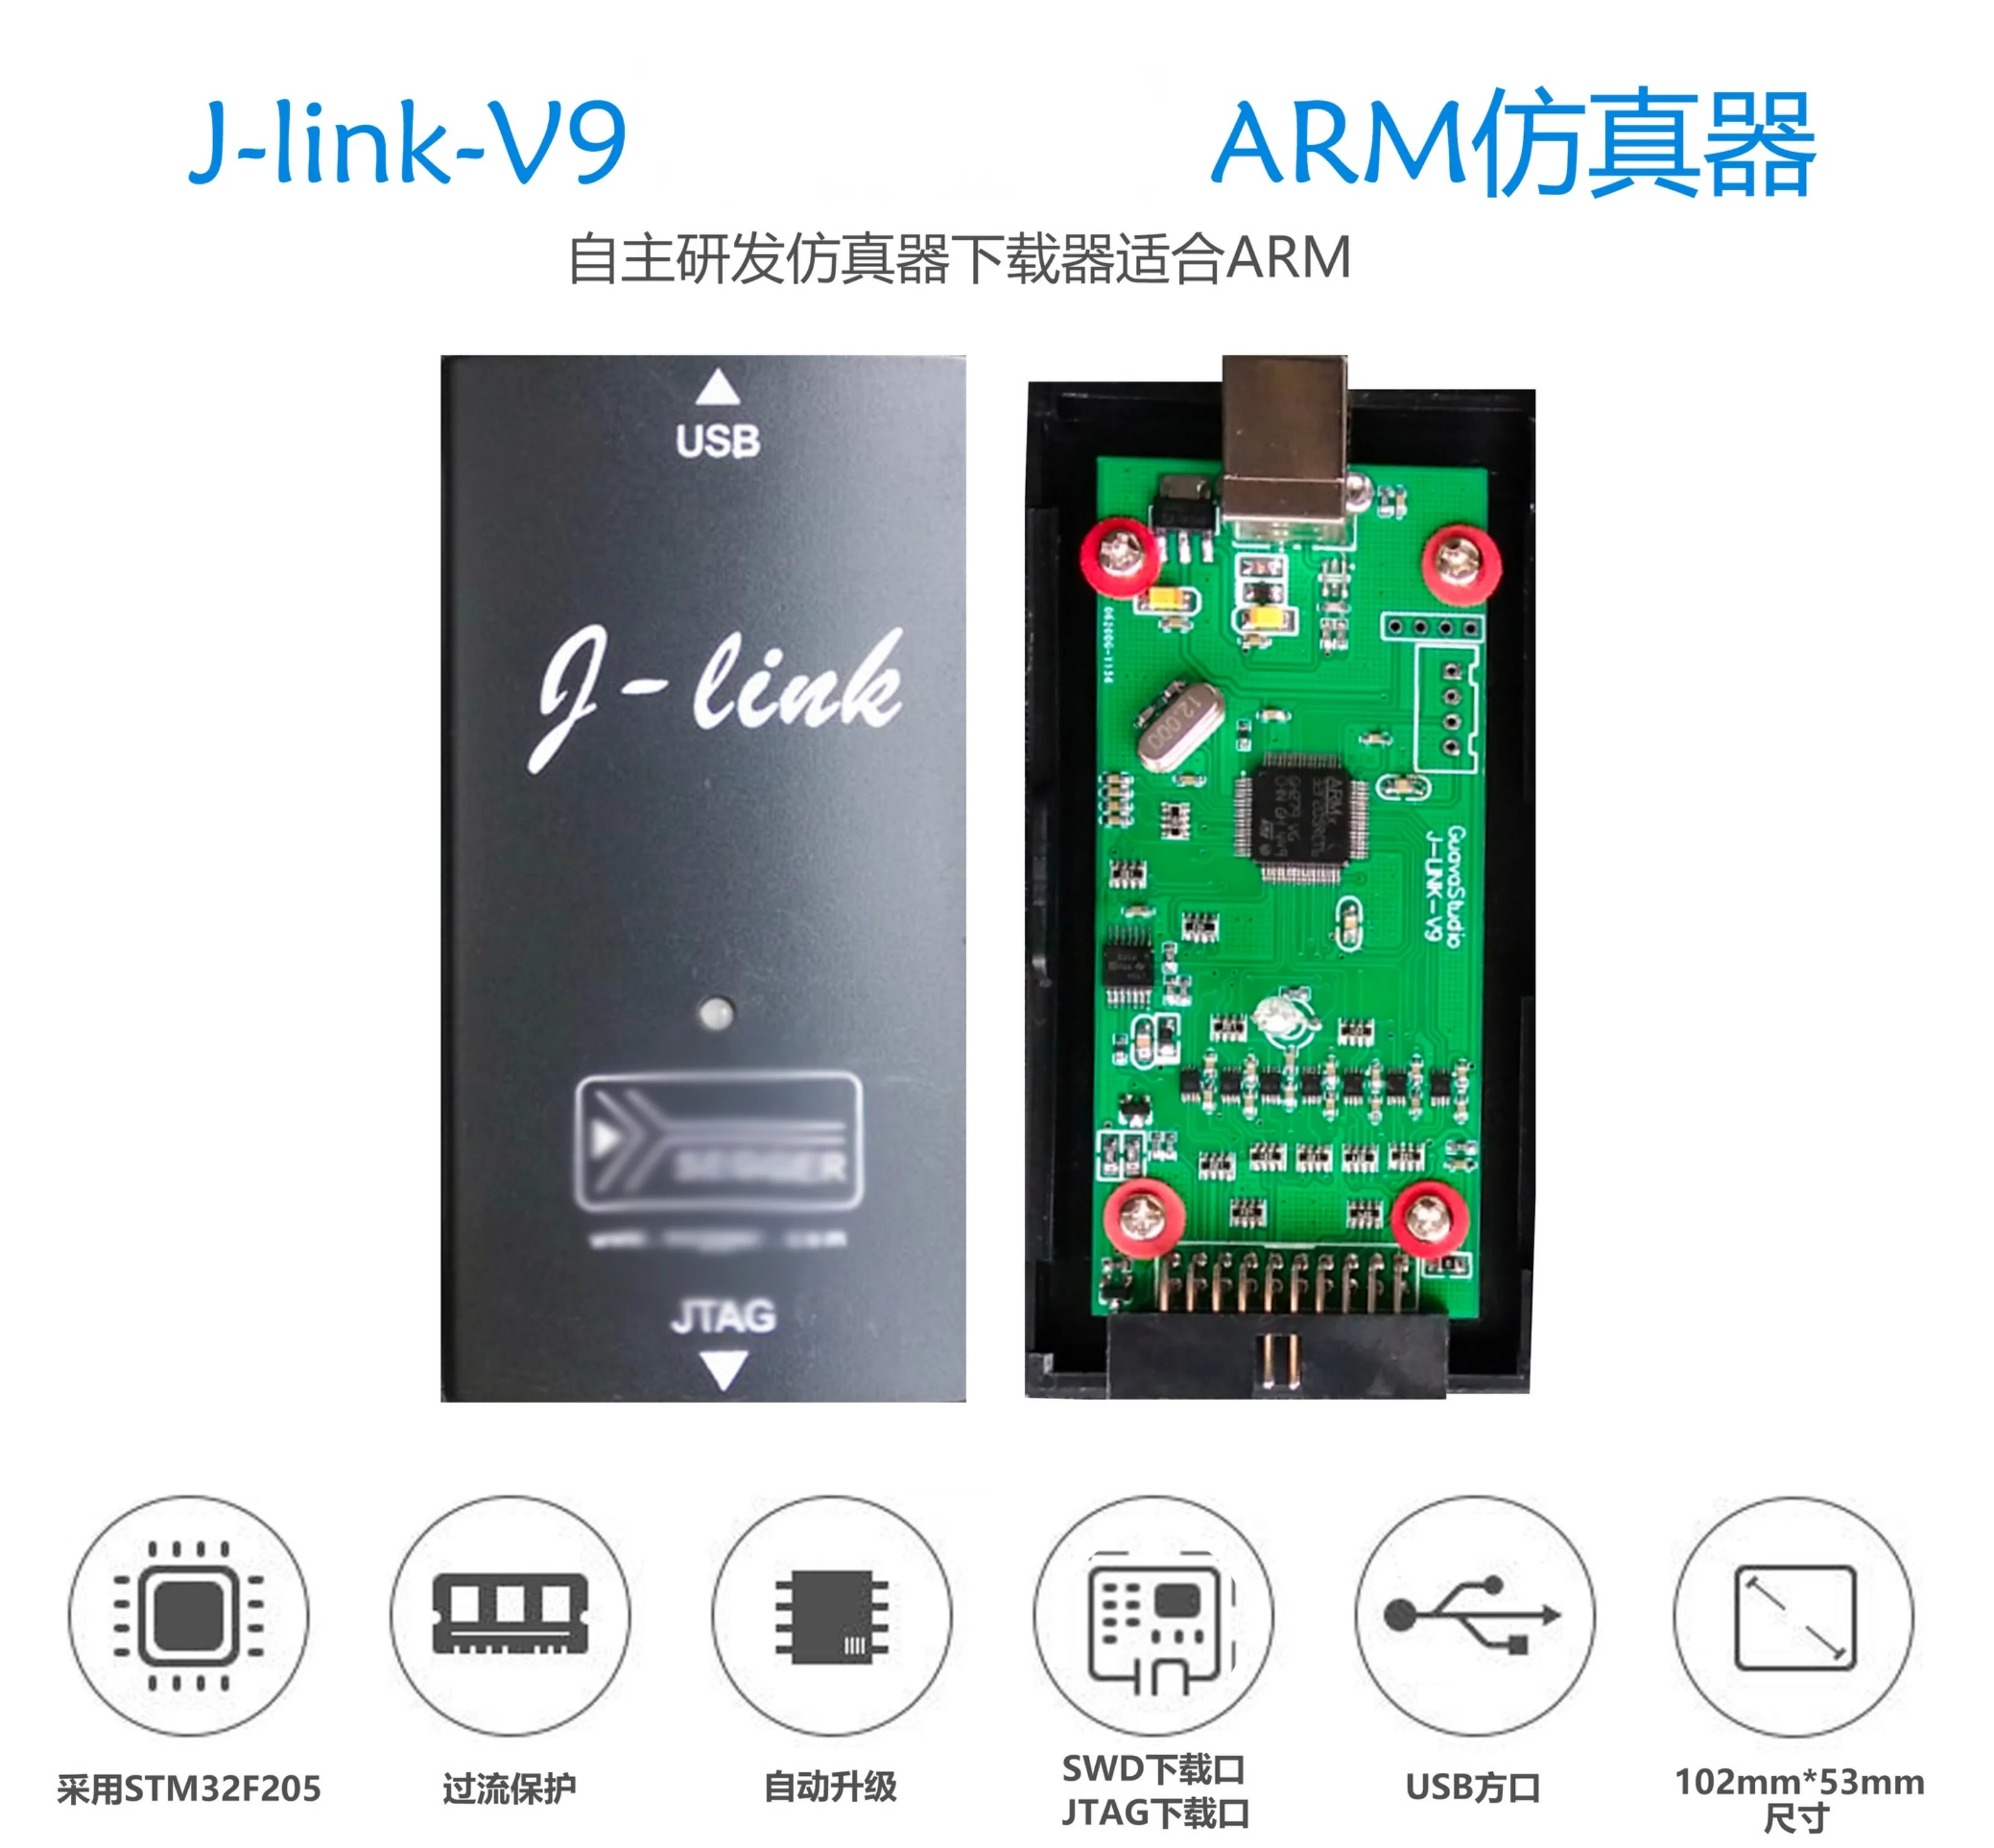 J-link-v9 JLINK V9 Stable High Speed Simulation Arm Simulation JLINK Programmer Automatic Upgrade